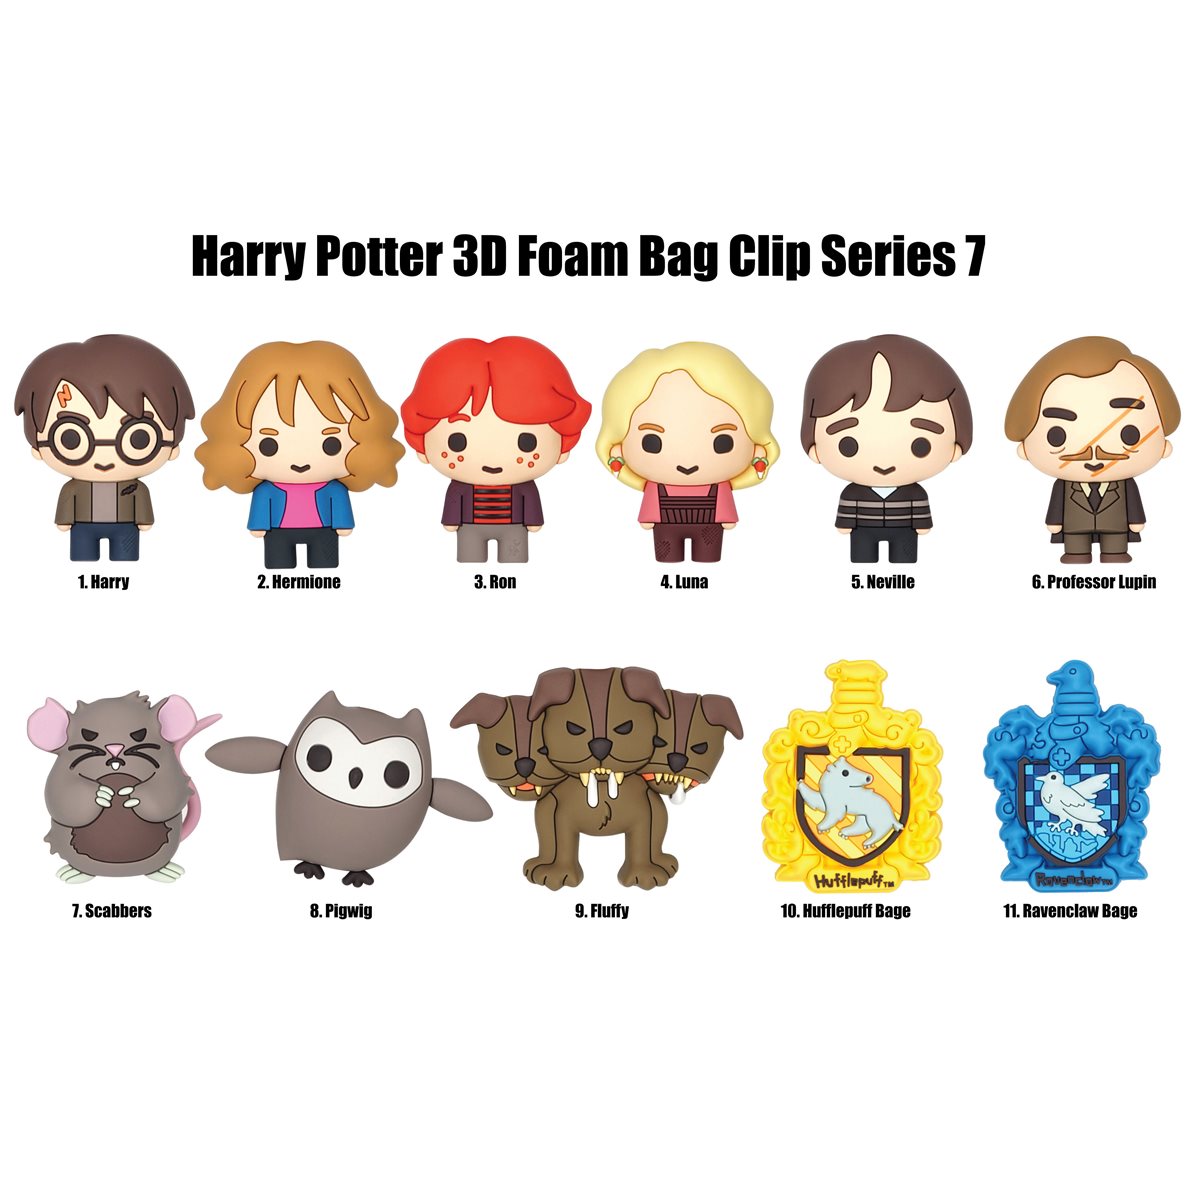 Harry Potter Plush Bag Clip Blind Bag